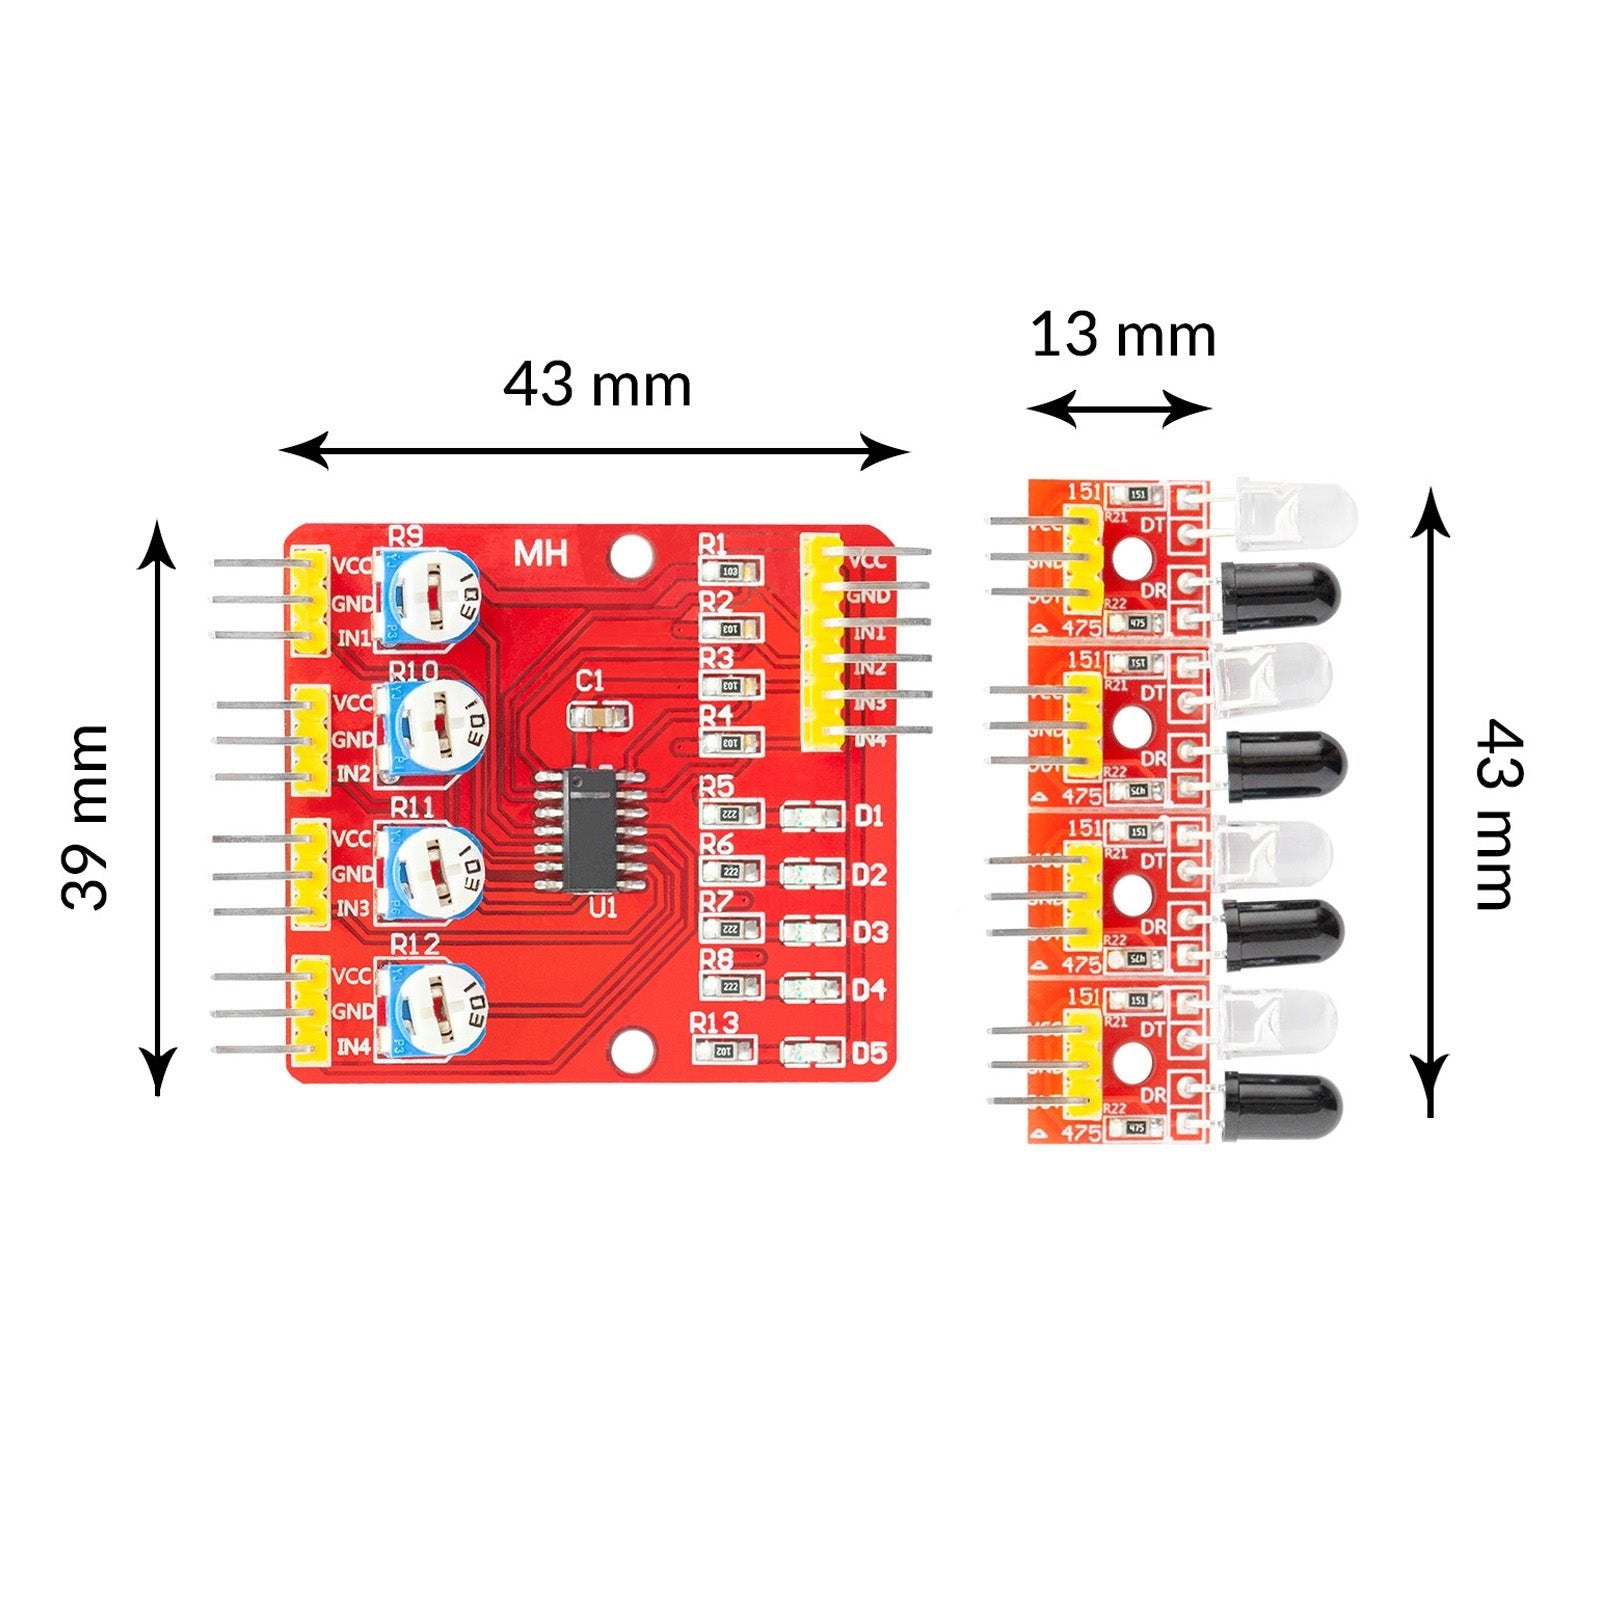 4-kanaals infrarood lijnen reflectie tracking-smart sensor module set slimme afstand detector CI-module met auto-obstructiepreventie en obstakelvermijding printplaat